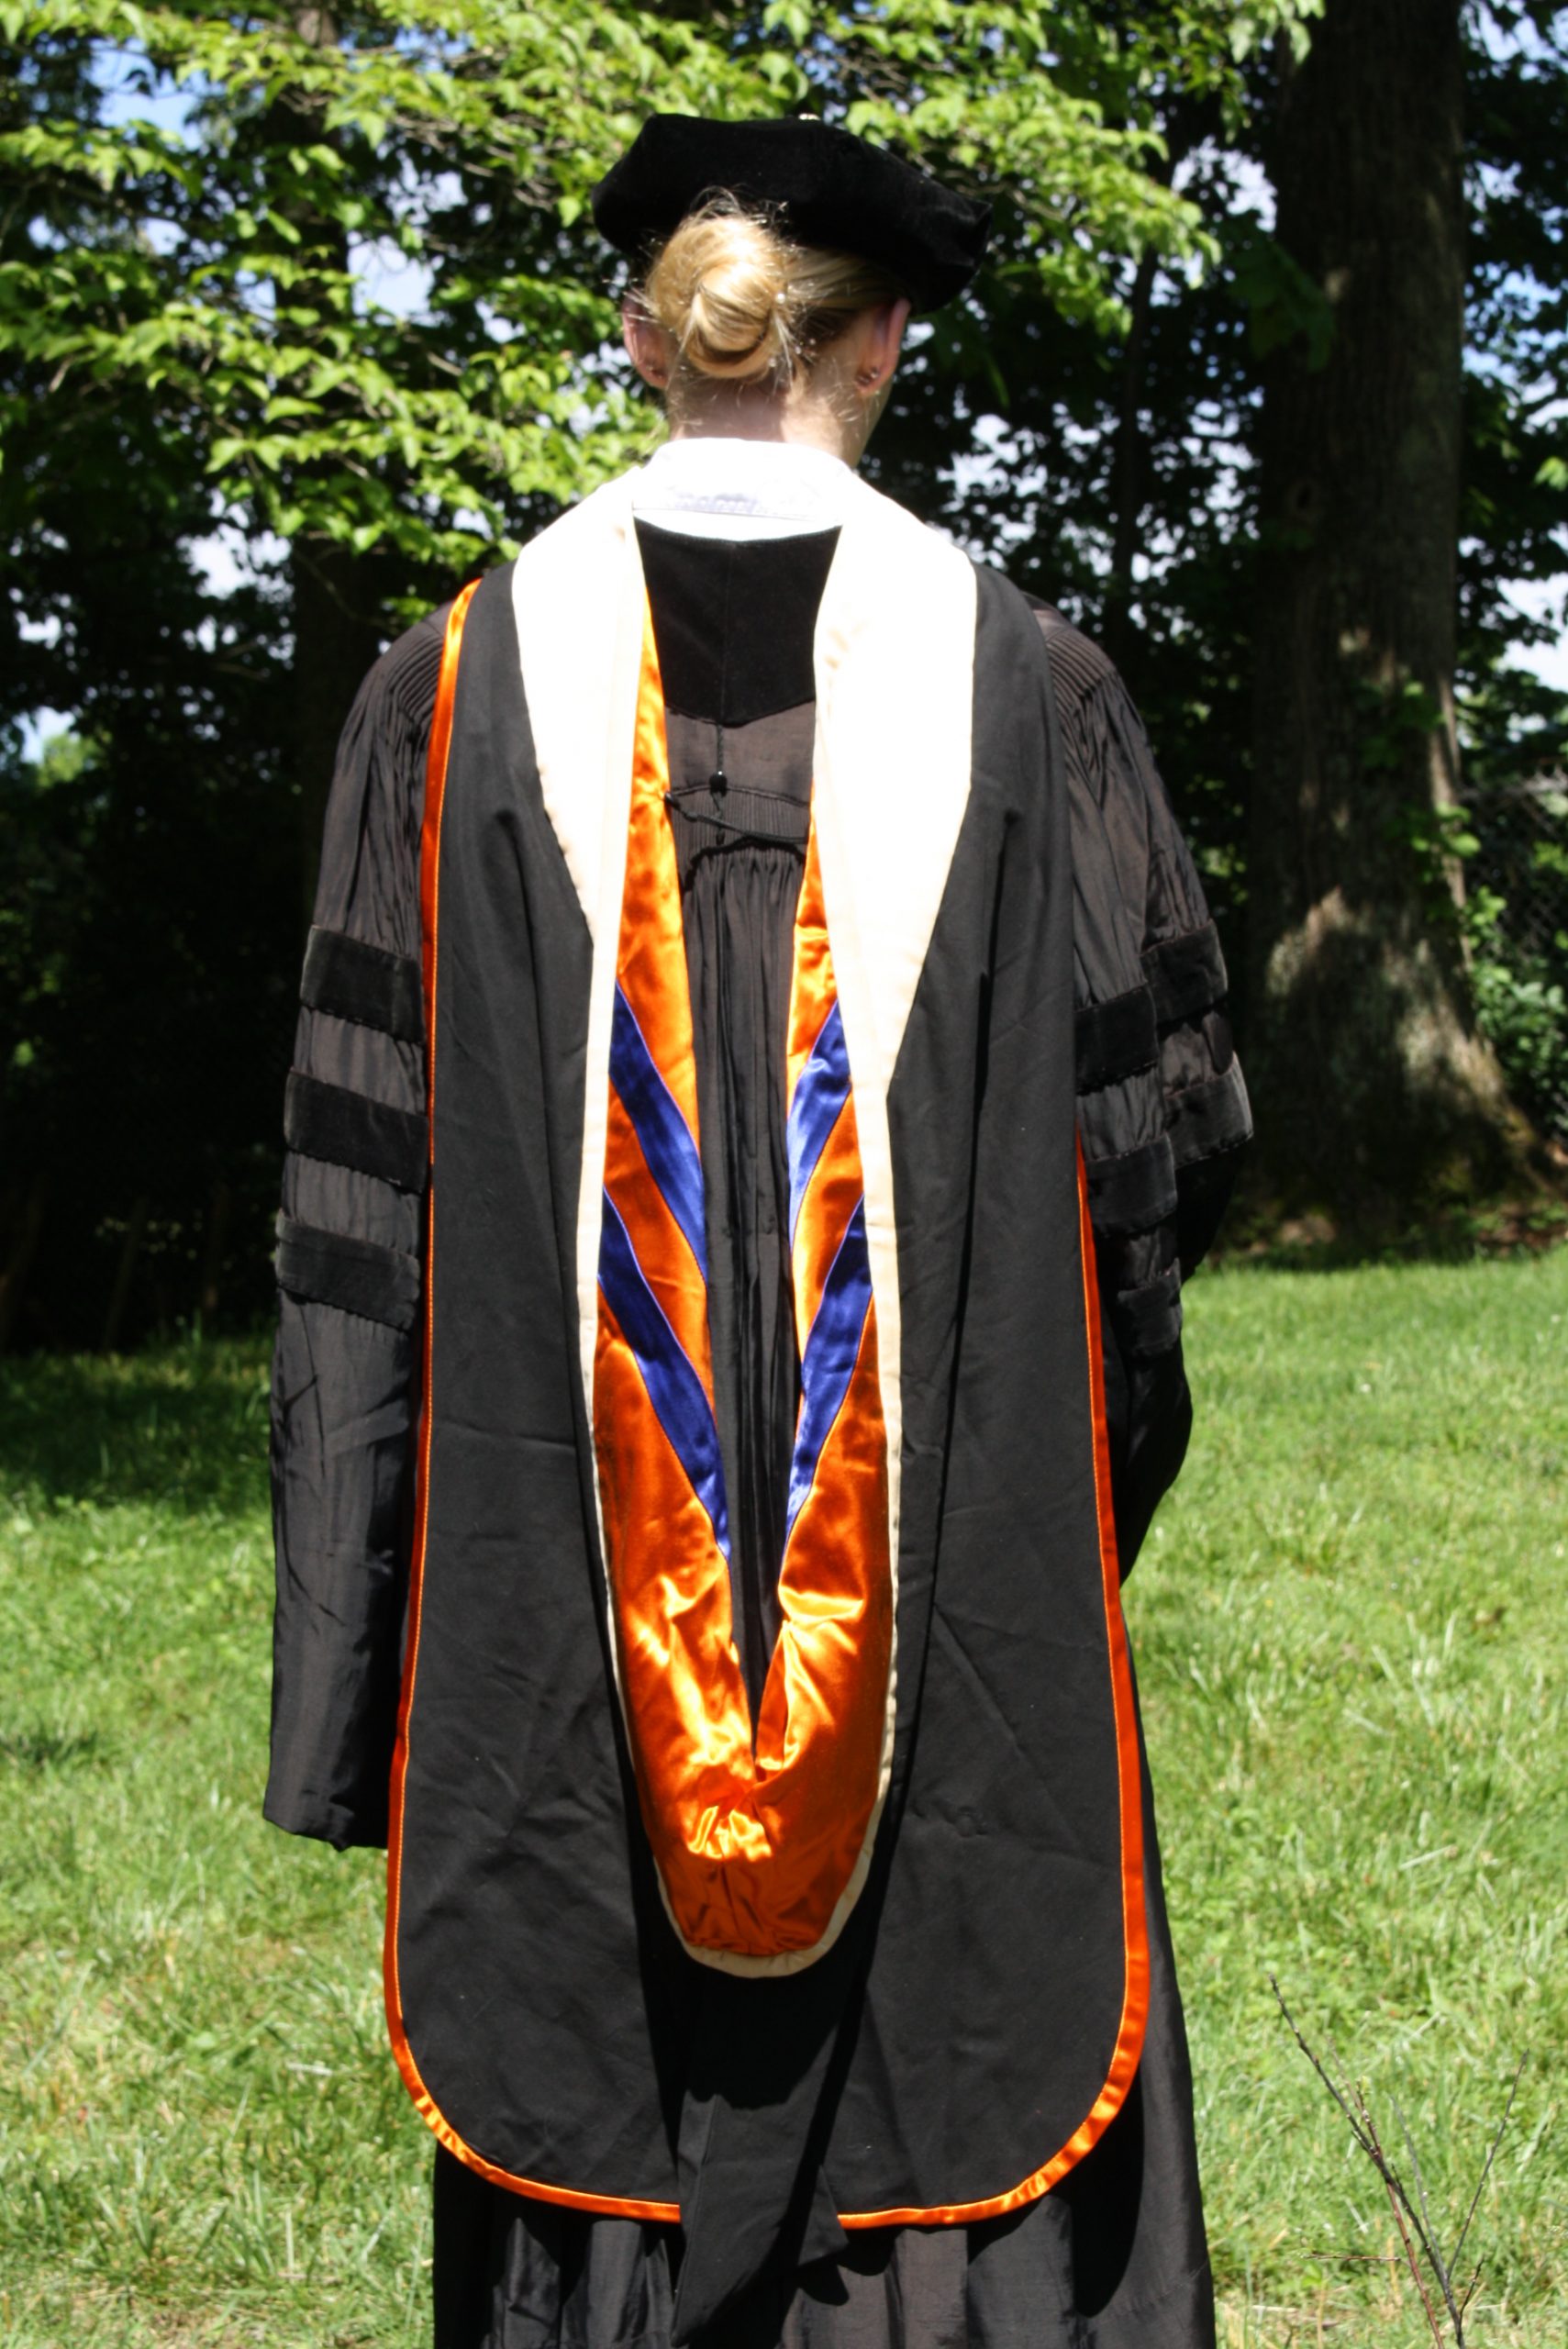 Wheaton College (Illinois) – The Intercollegiate Registry of Academic